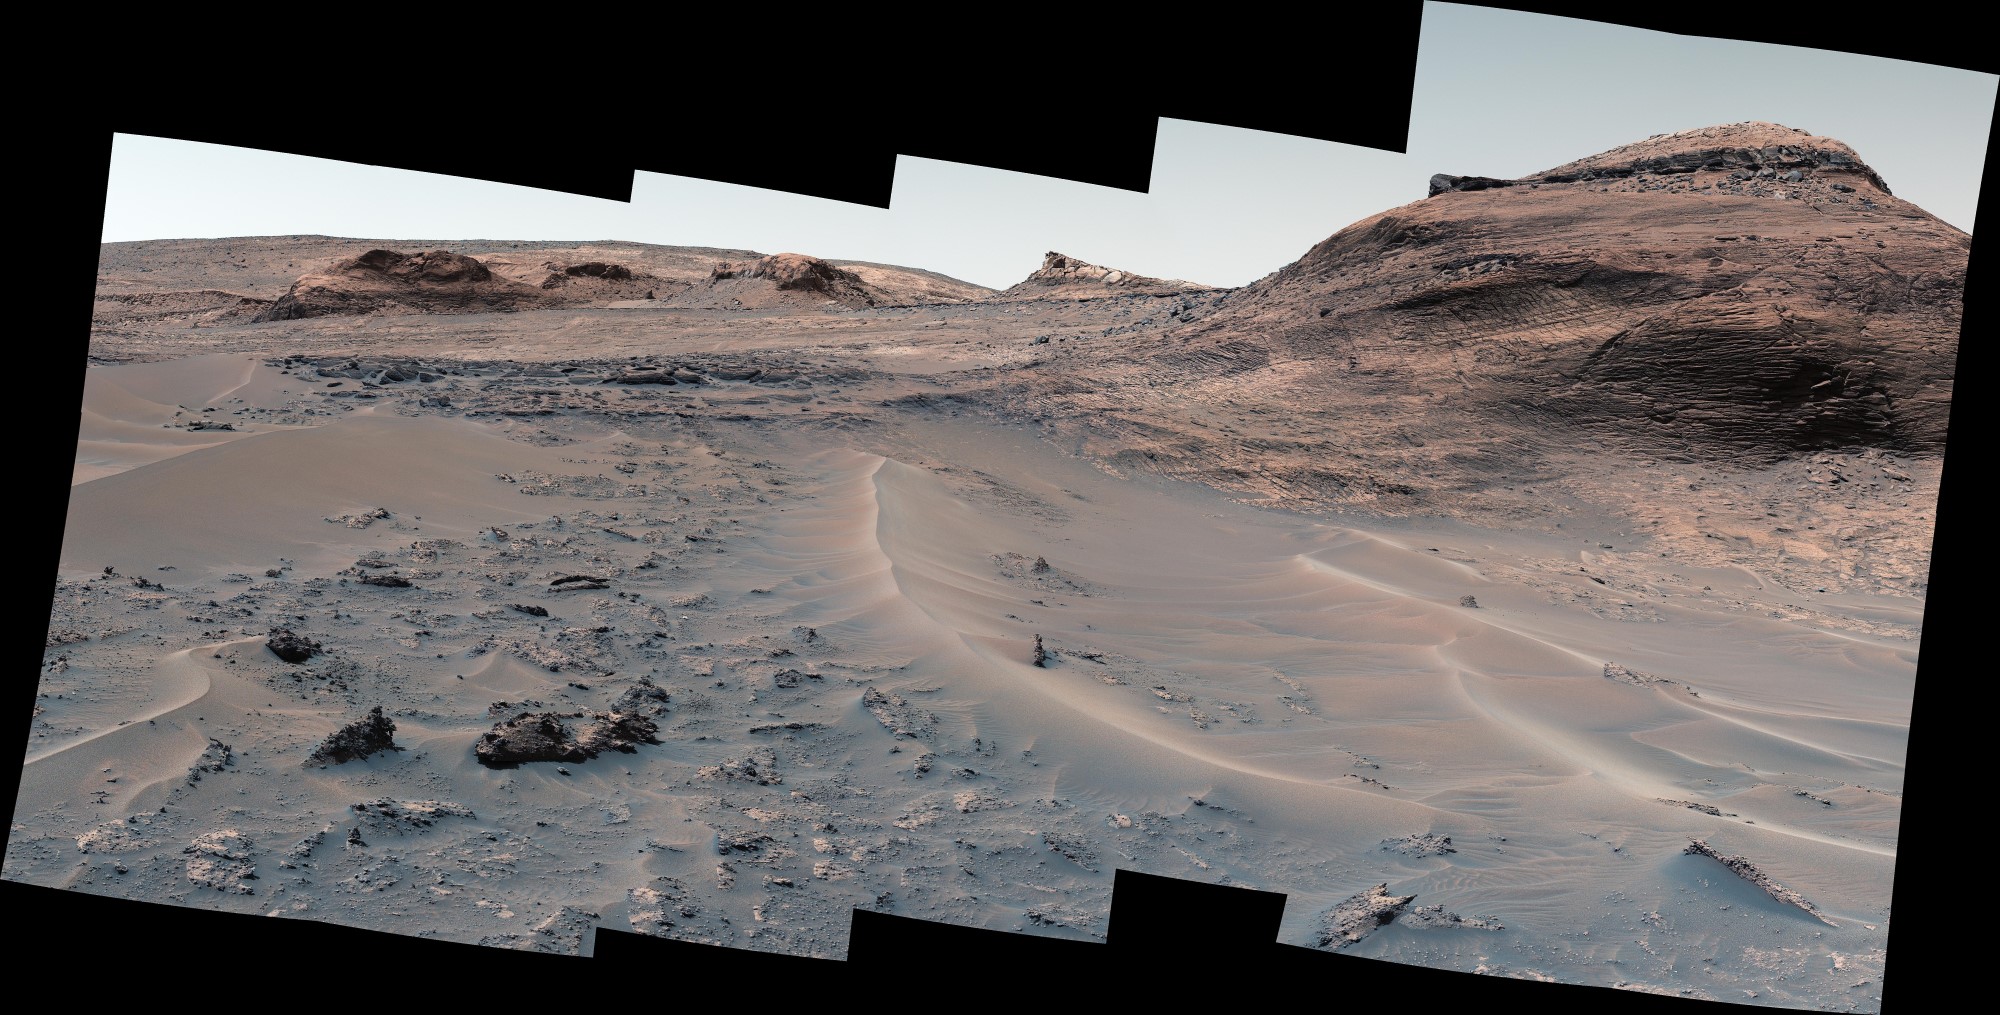 Το ρόβερ Curiosity της NASA για τον Άρη φτάνει σε μια ενδιαφέρουσα αλμυρή τοποθεσία μετά από ένα ύπουλο ταξίδι